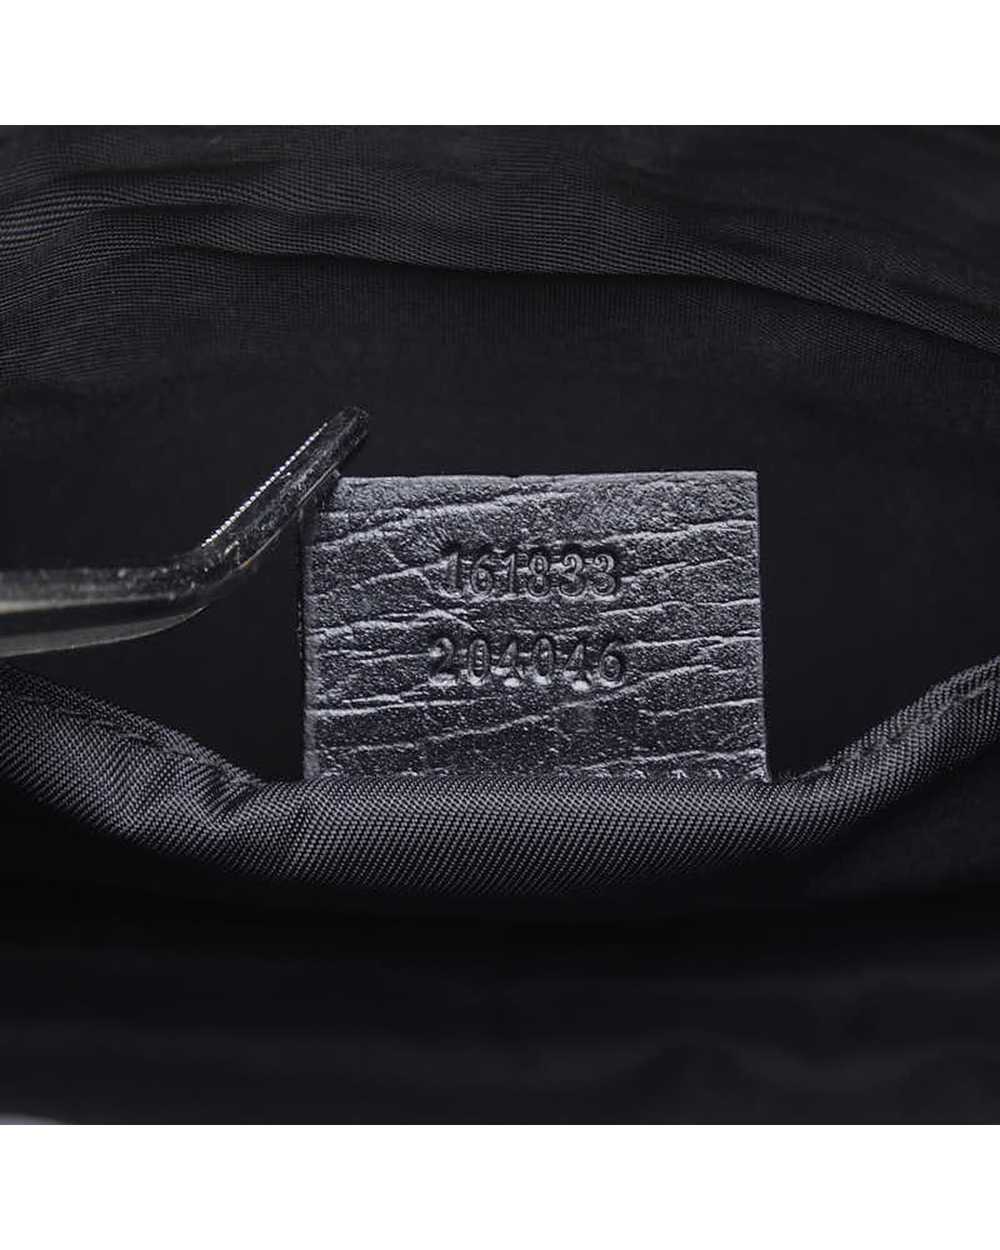 Gucci Black GG Supreme Belt Bag in Excellent Cond… - image 8